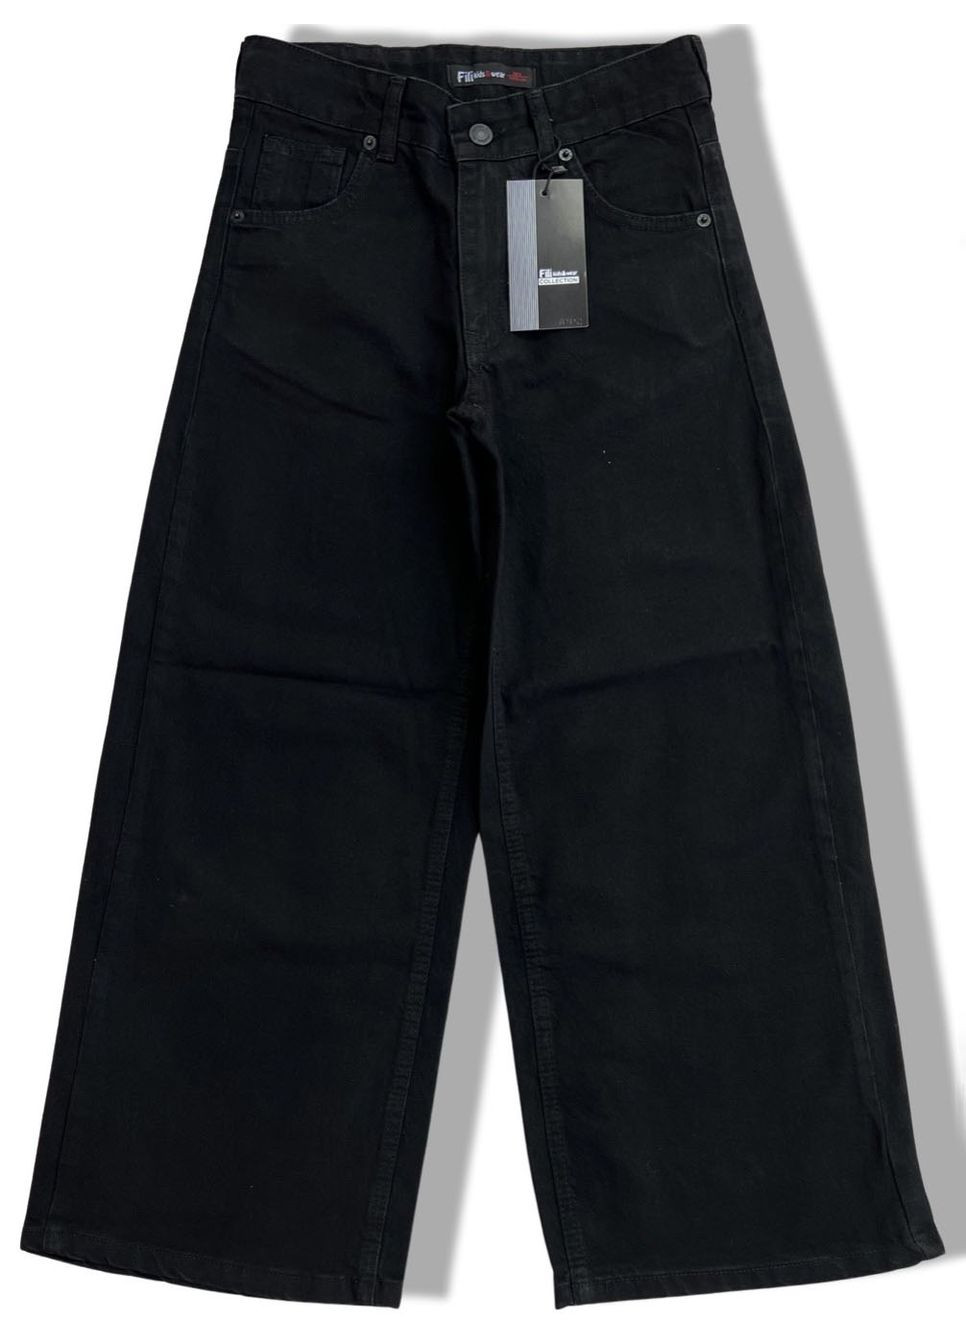 Черные демисезонные джинсы-палаццо для девочки fili kids черные 1002 158 см No Brand